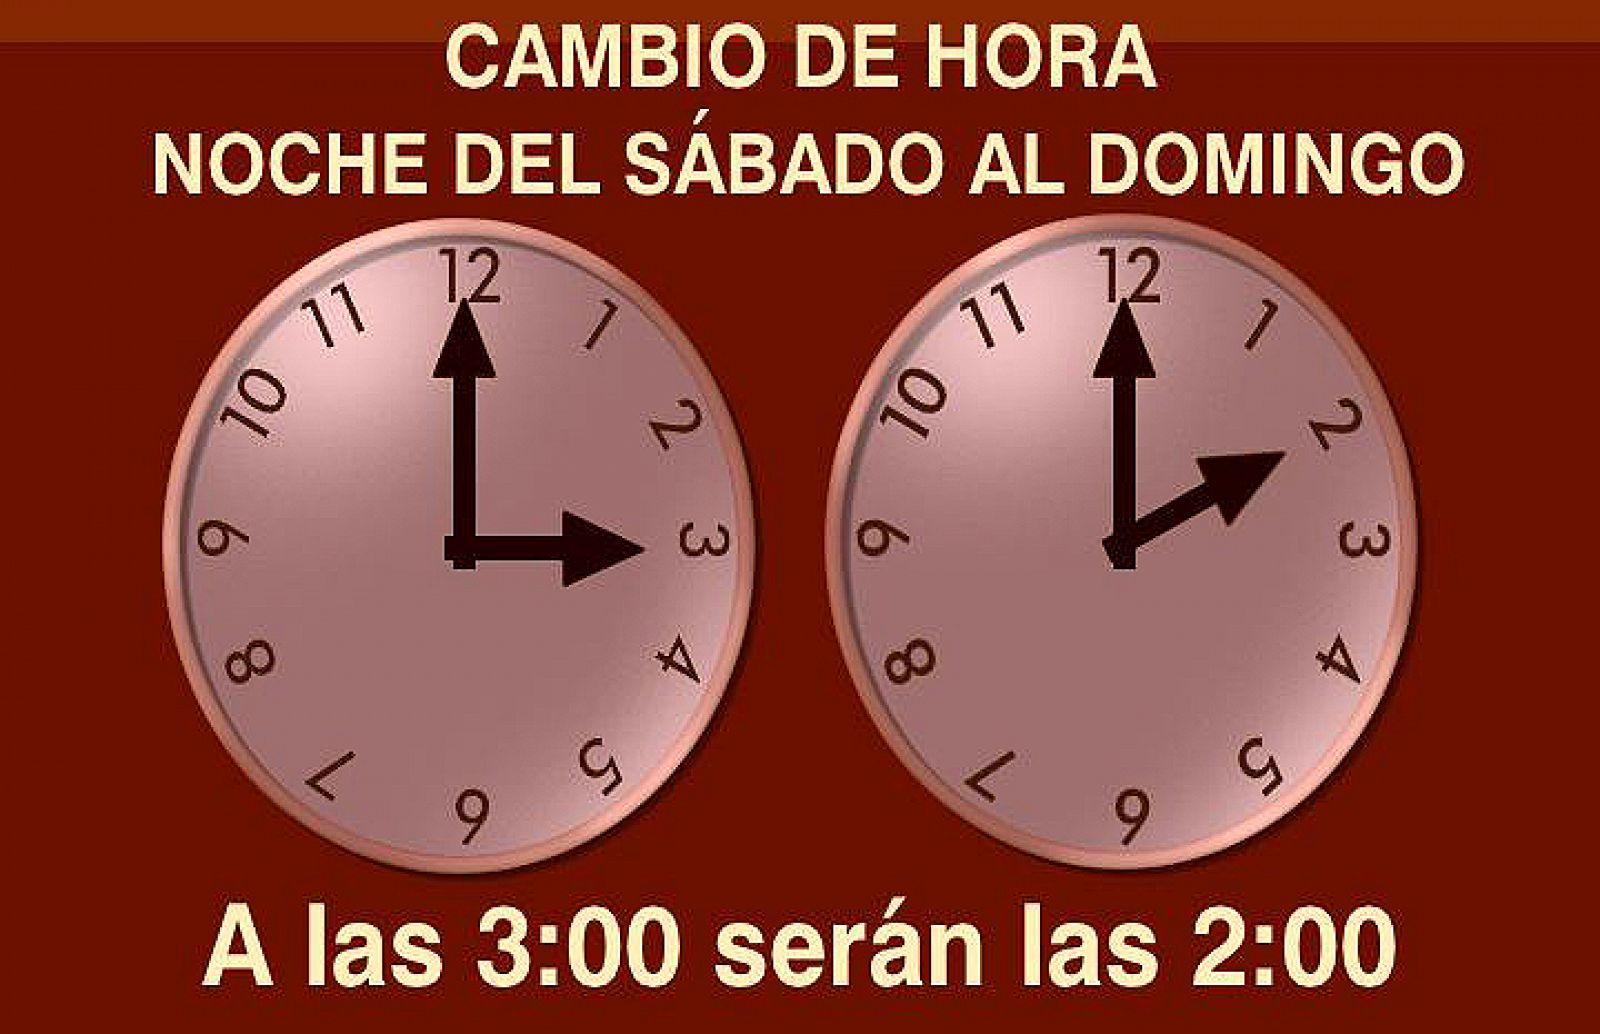 El domingo, 26 de octubre, cambia la hora de las 03.00 a las 02.00